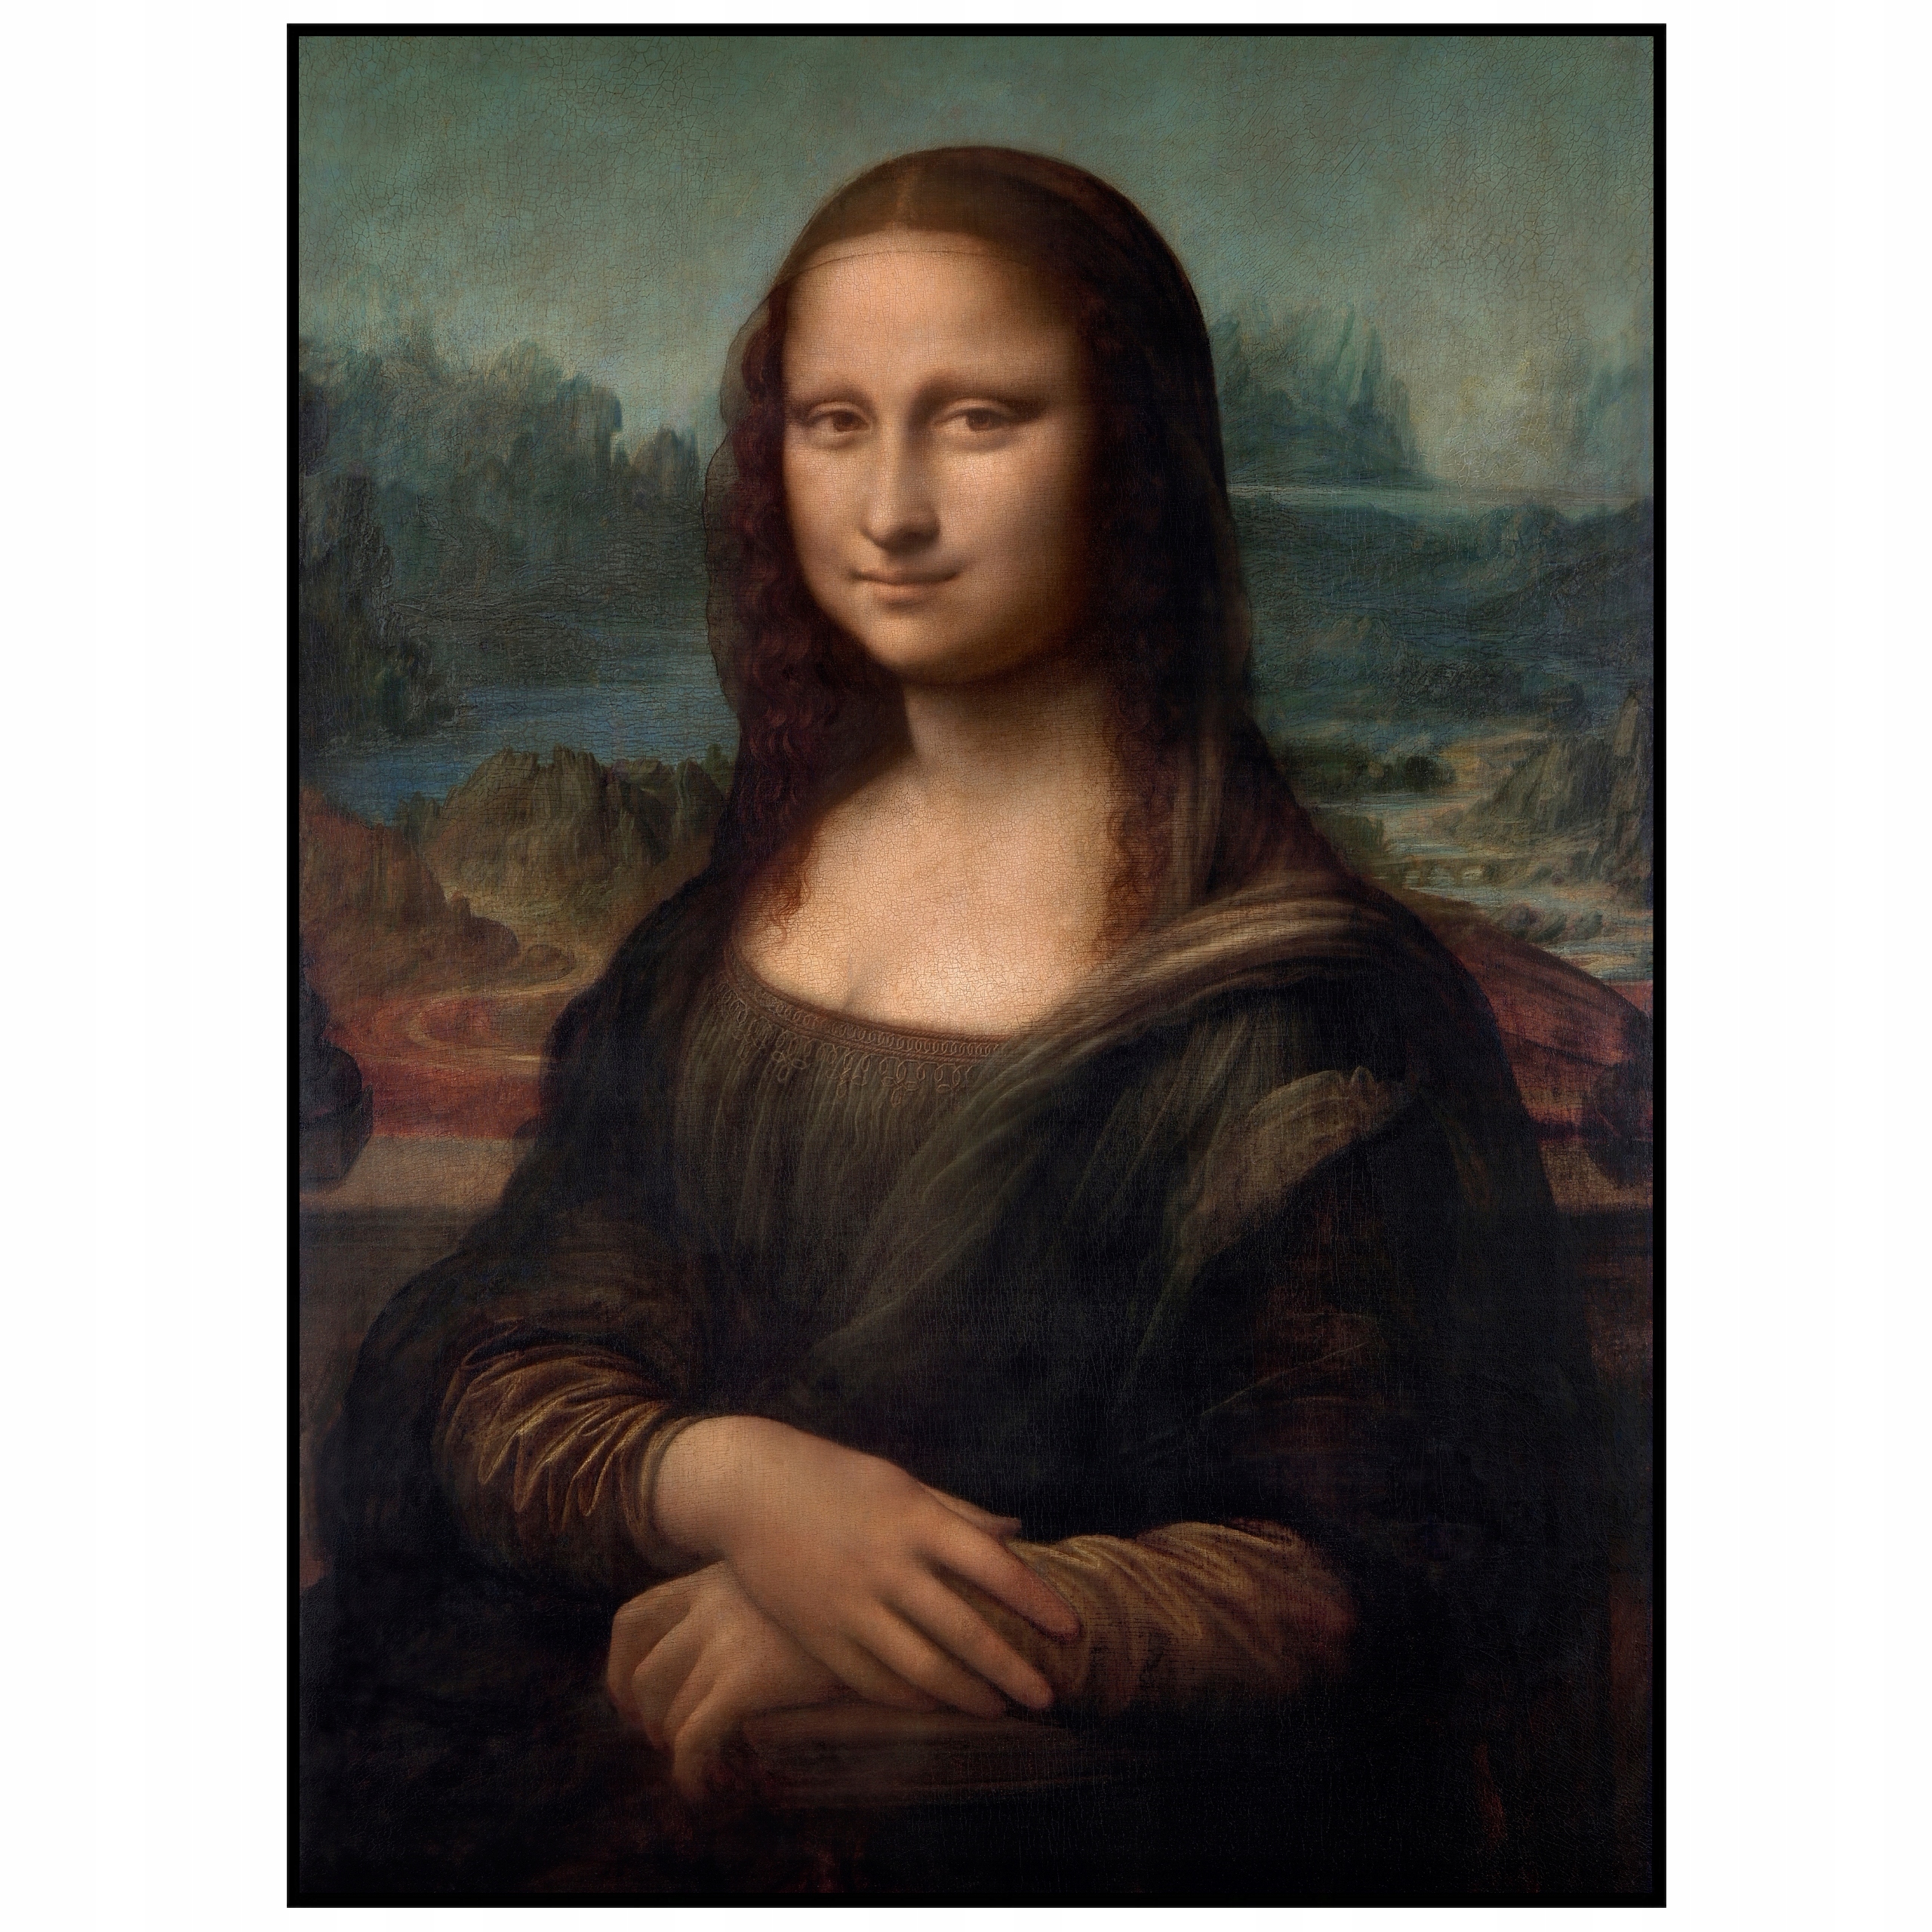 Plakat A3 Mona Lisa Obraz Leonardo da Vinci